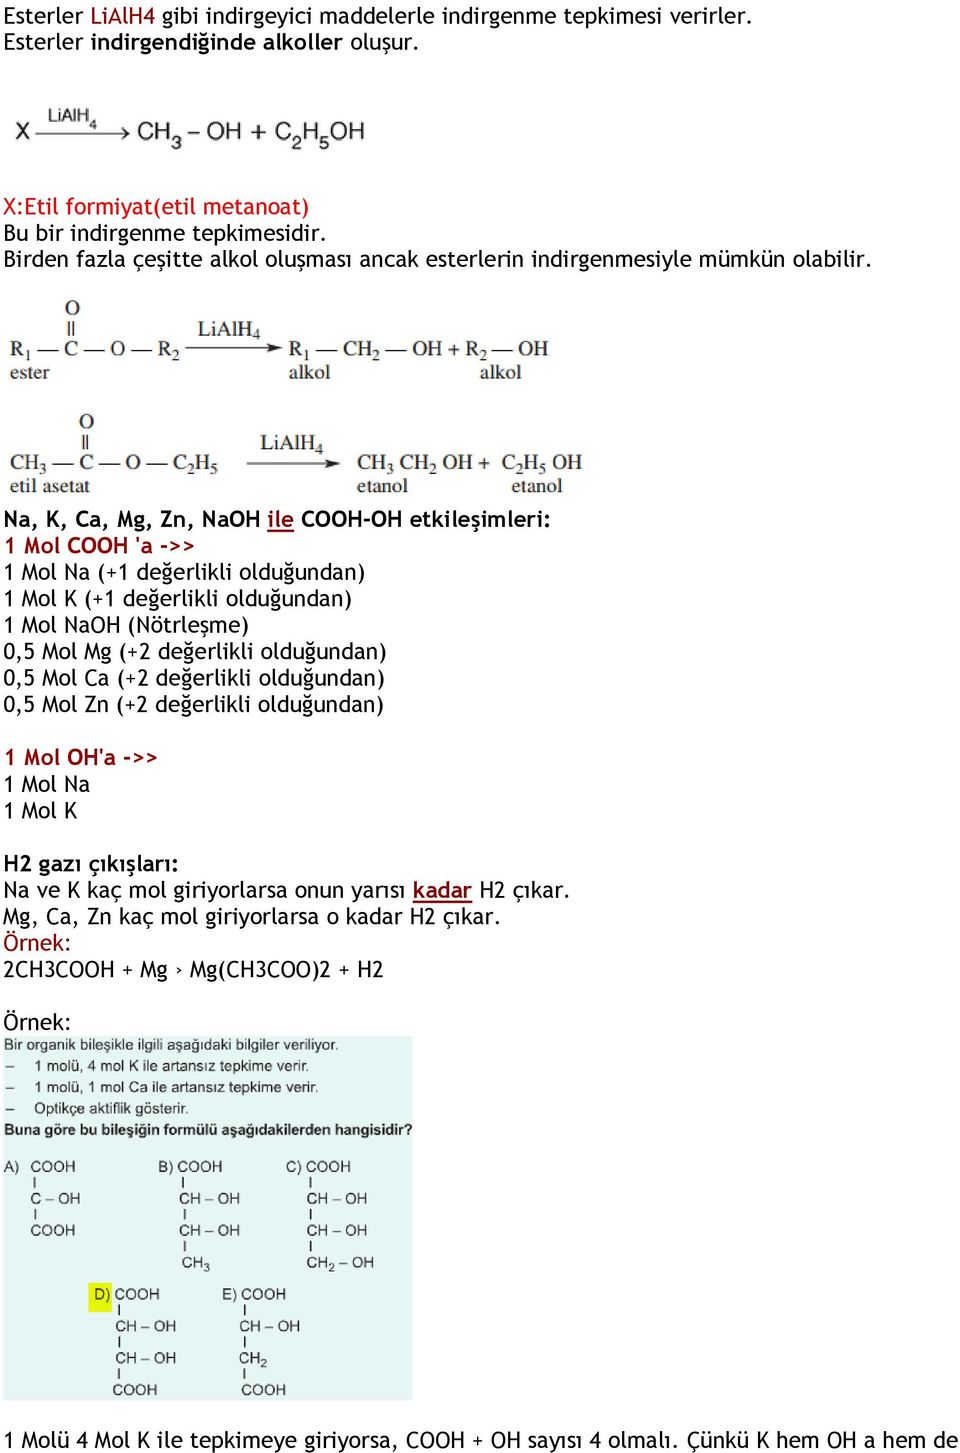 Na, K, Ca, Mg, Zn, NaOH ile COOH-OH etkileşimleri: 1 Mol COOH 'a ->> 1 Mol Na (+1 değerlikli olduğundan) 1 Mol K (+1 değerlikli olduğundan) 1 Mol NaOH (Nötrleşme) 0,5 Mol Mg (+2 değerlikli